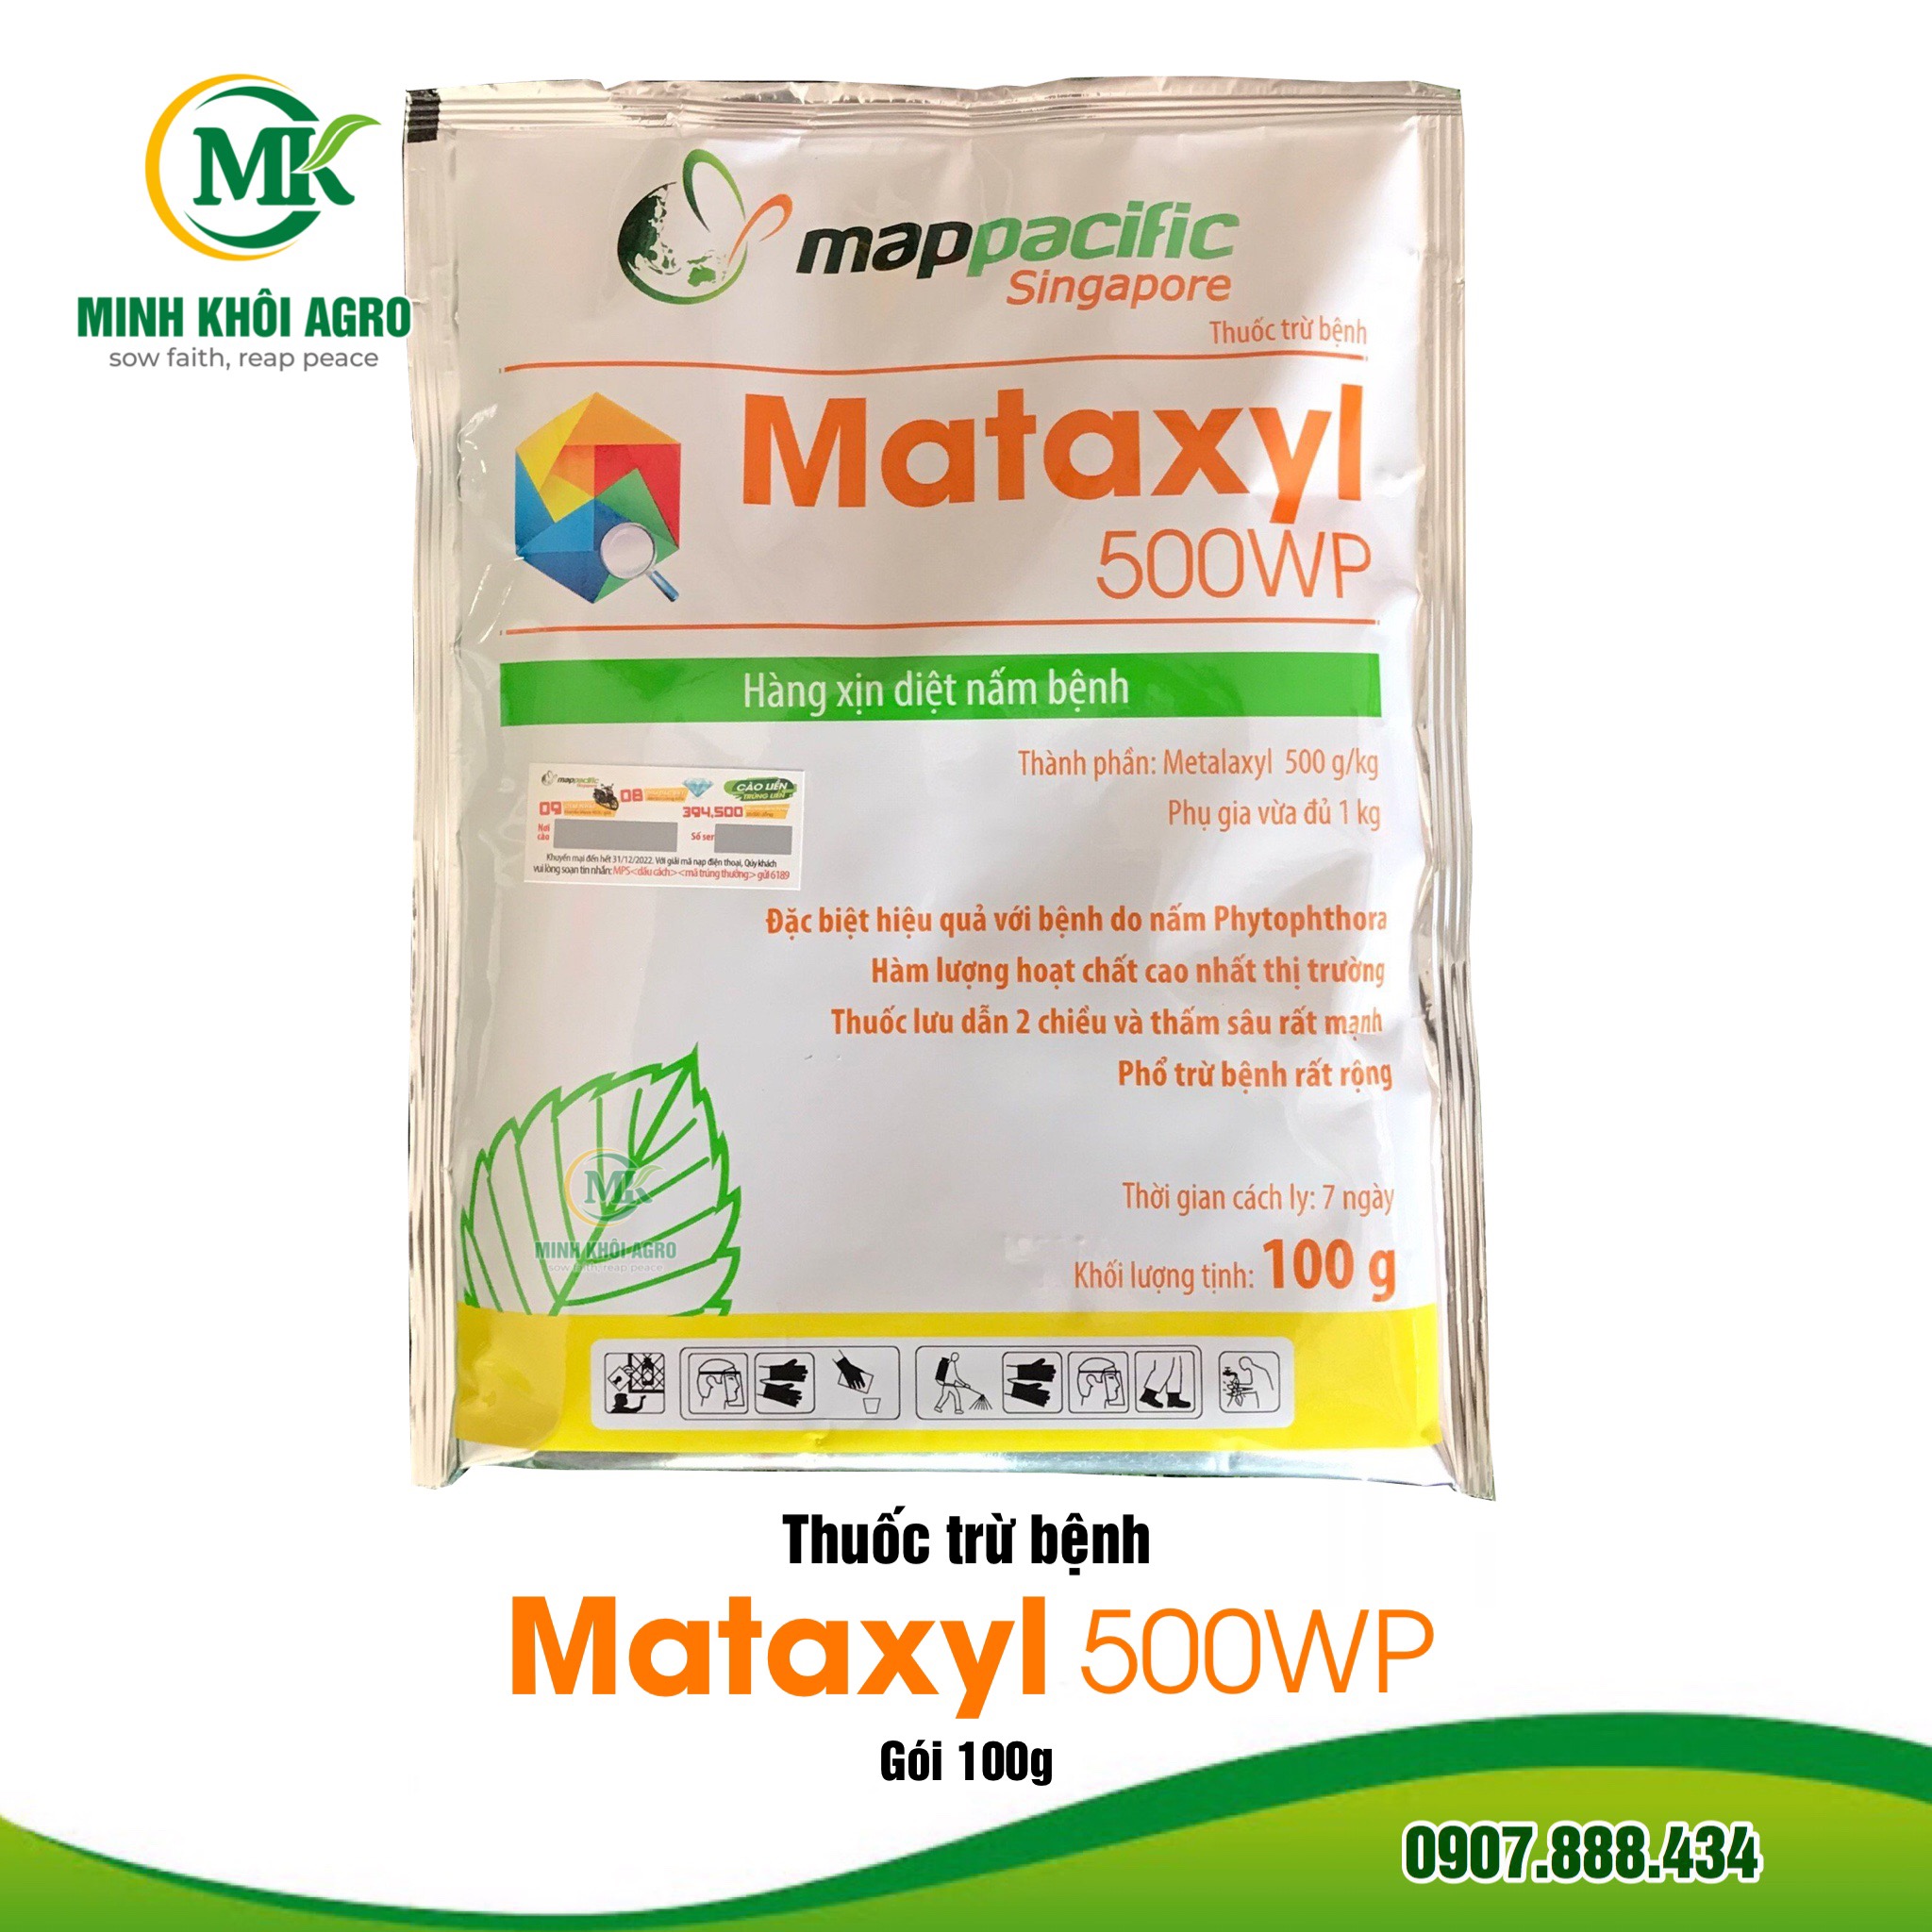 Thuốc trừ bệnh Map Mataxyl 500WP - Gói 100g